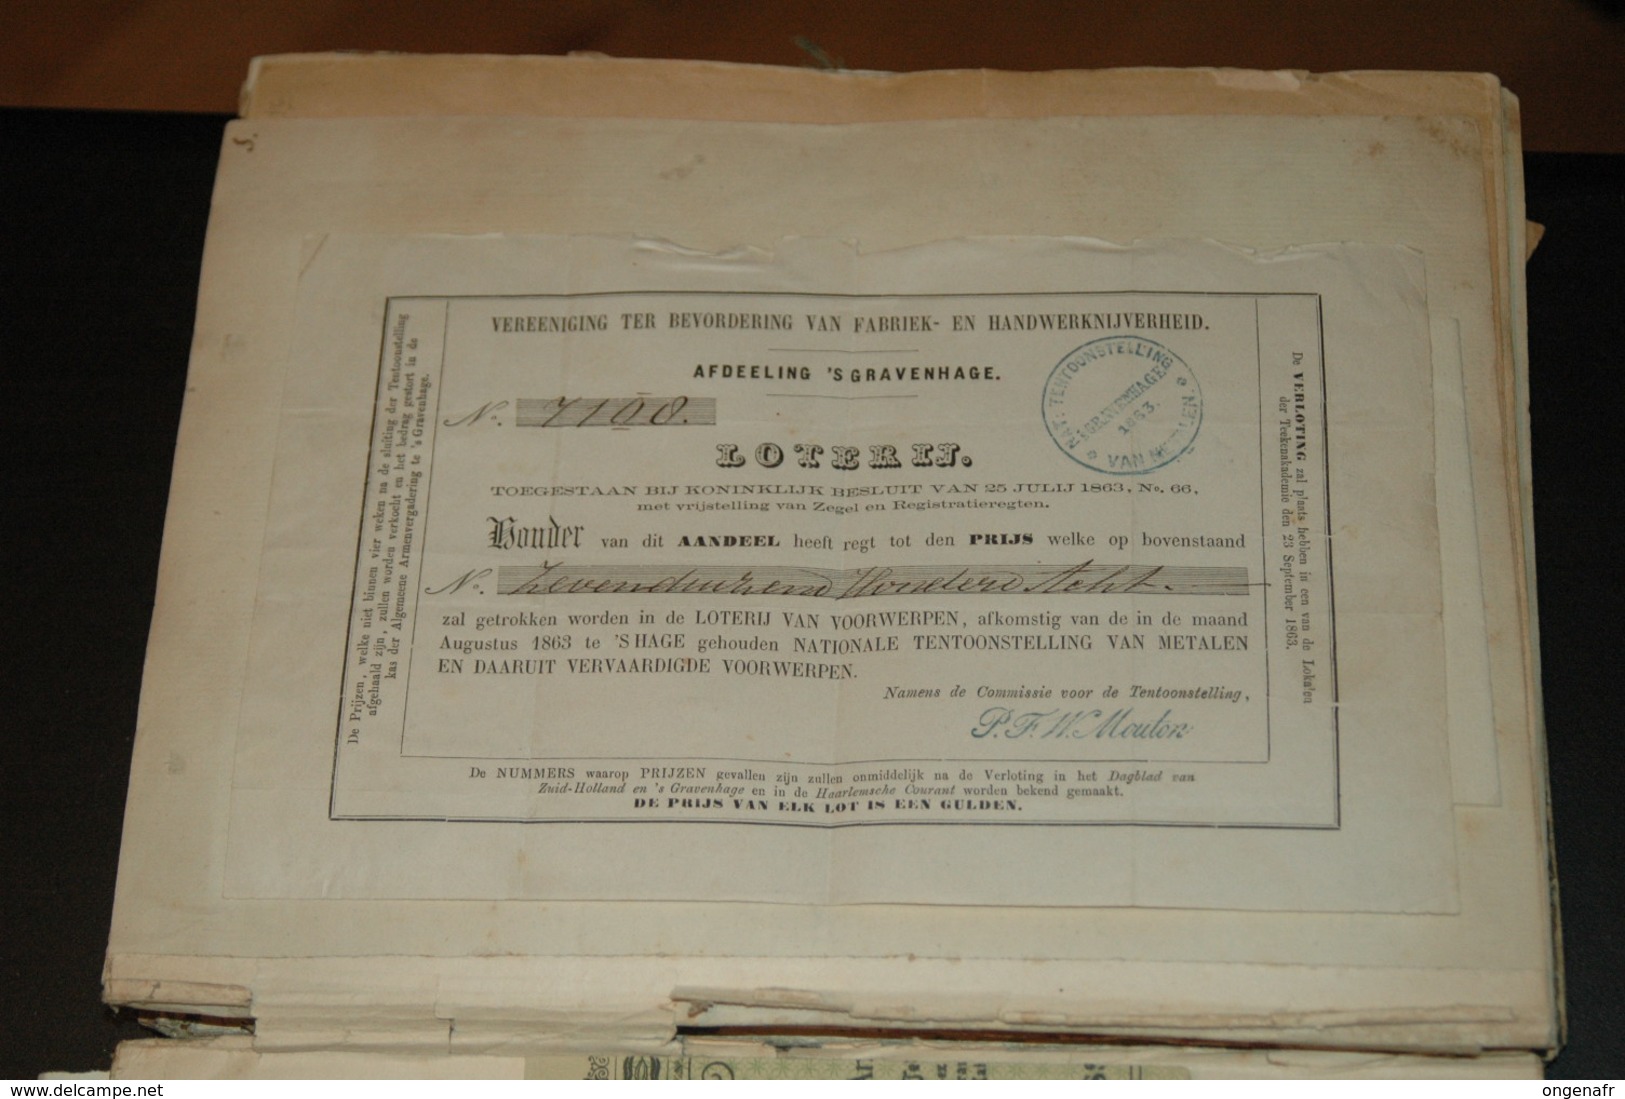 recueil de divers doc. très anciens, donc assignant de 1871 et suite, ticket de trains, etc ..., voir scans